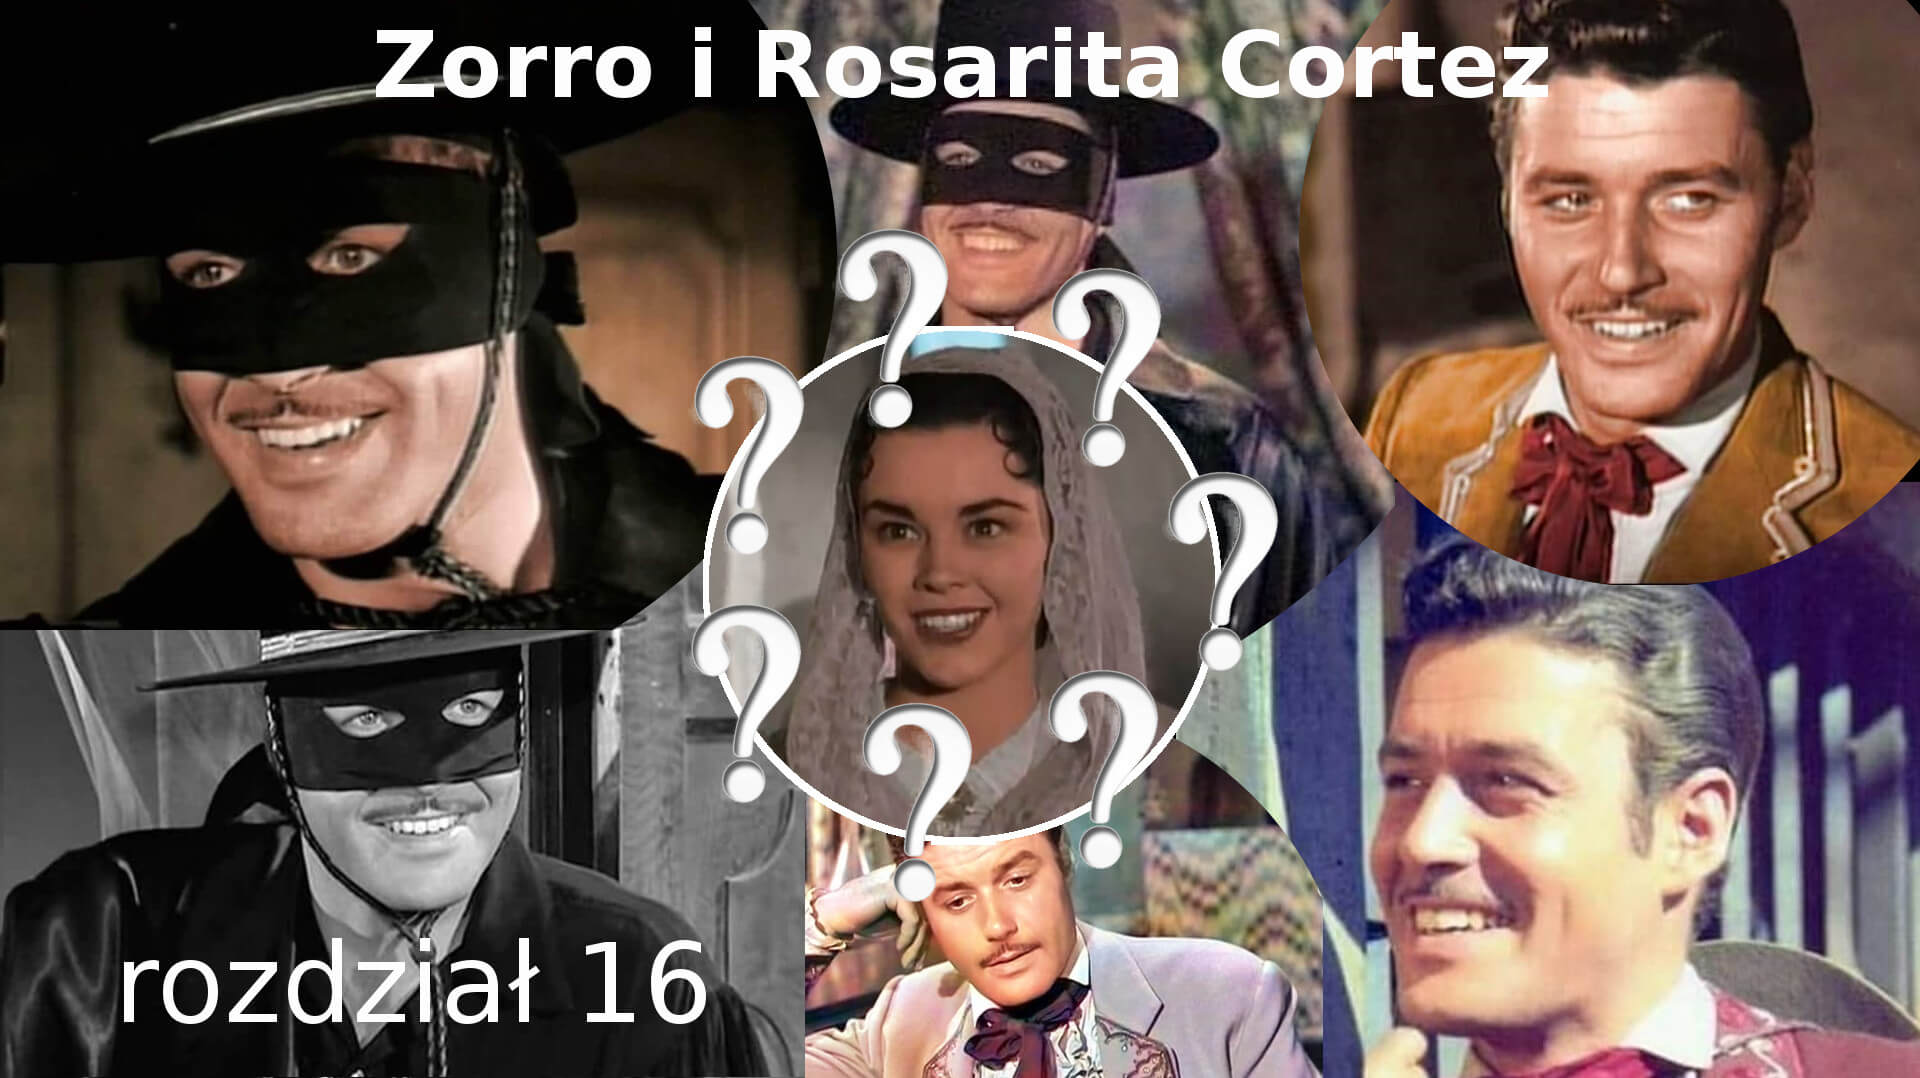 Zorro i Rosarita Cortez rozdział 16 Zorro fanfiction